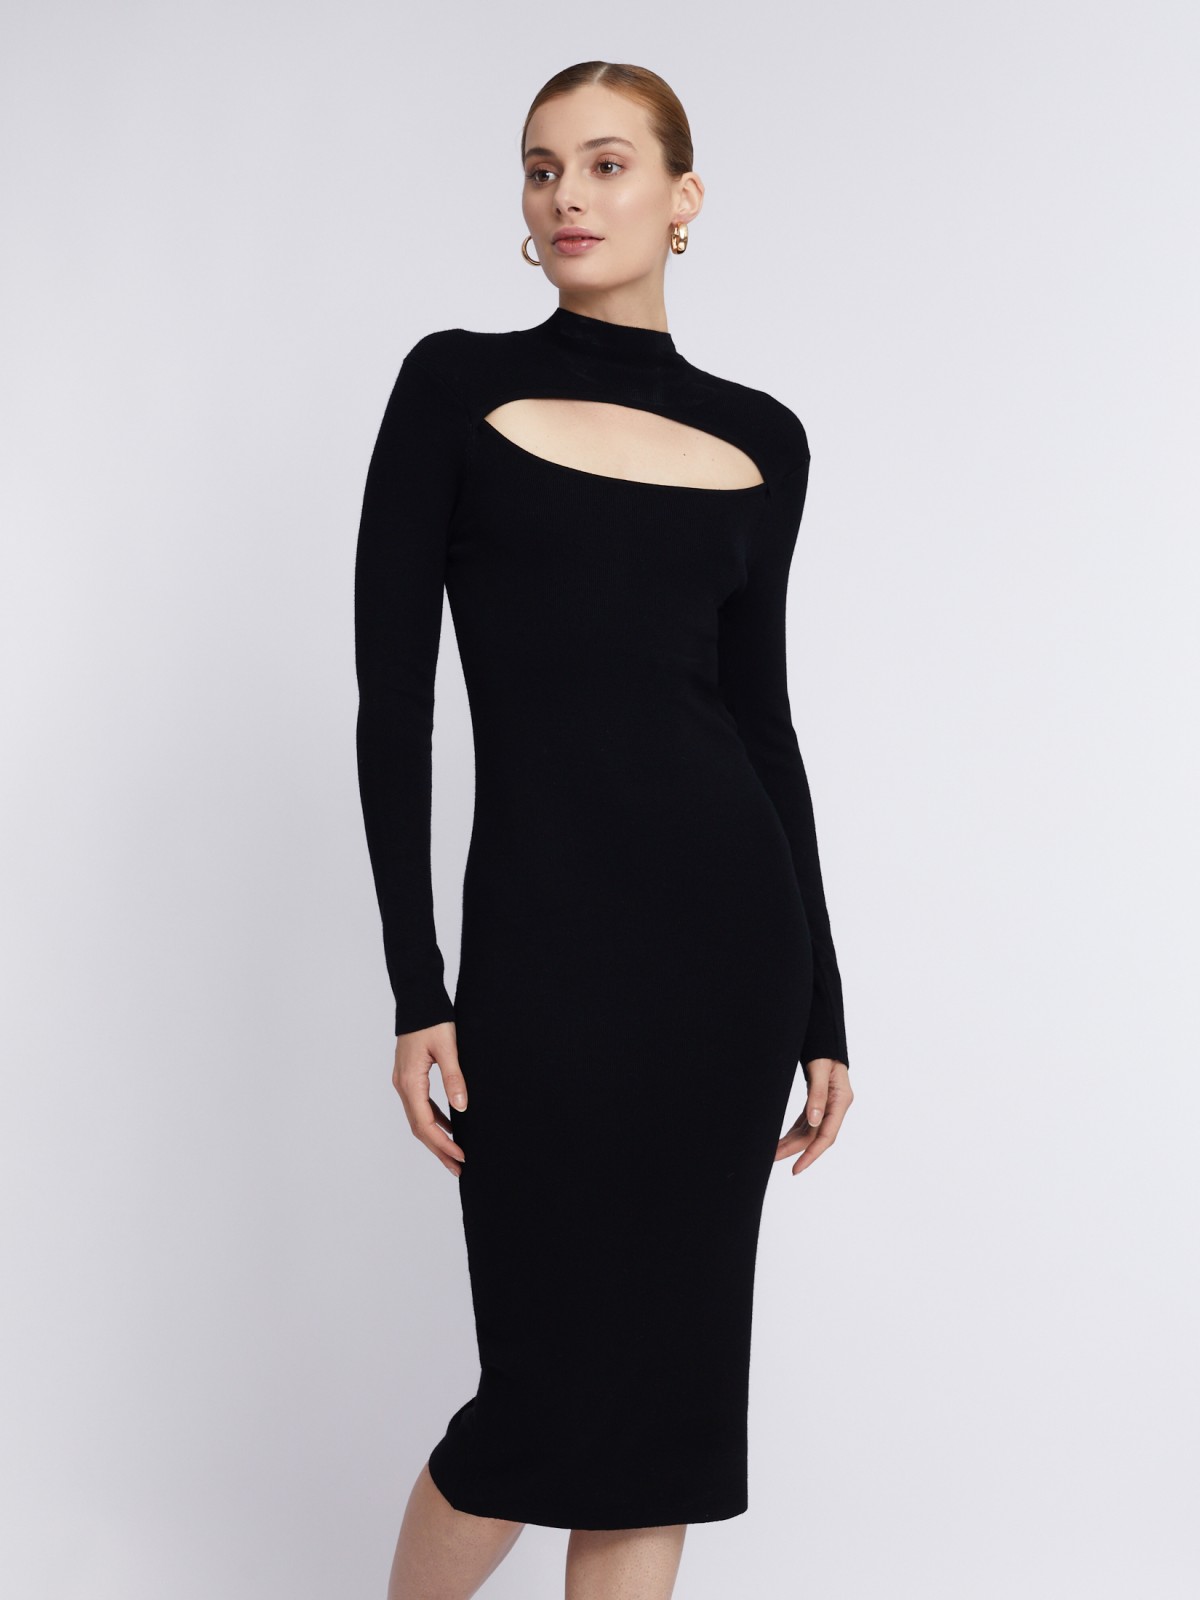 Трикотажное платье-лапша длины миди с разрезом на груди zolla 223338442021, цвет черный, размер XS